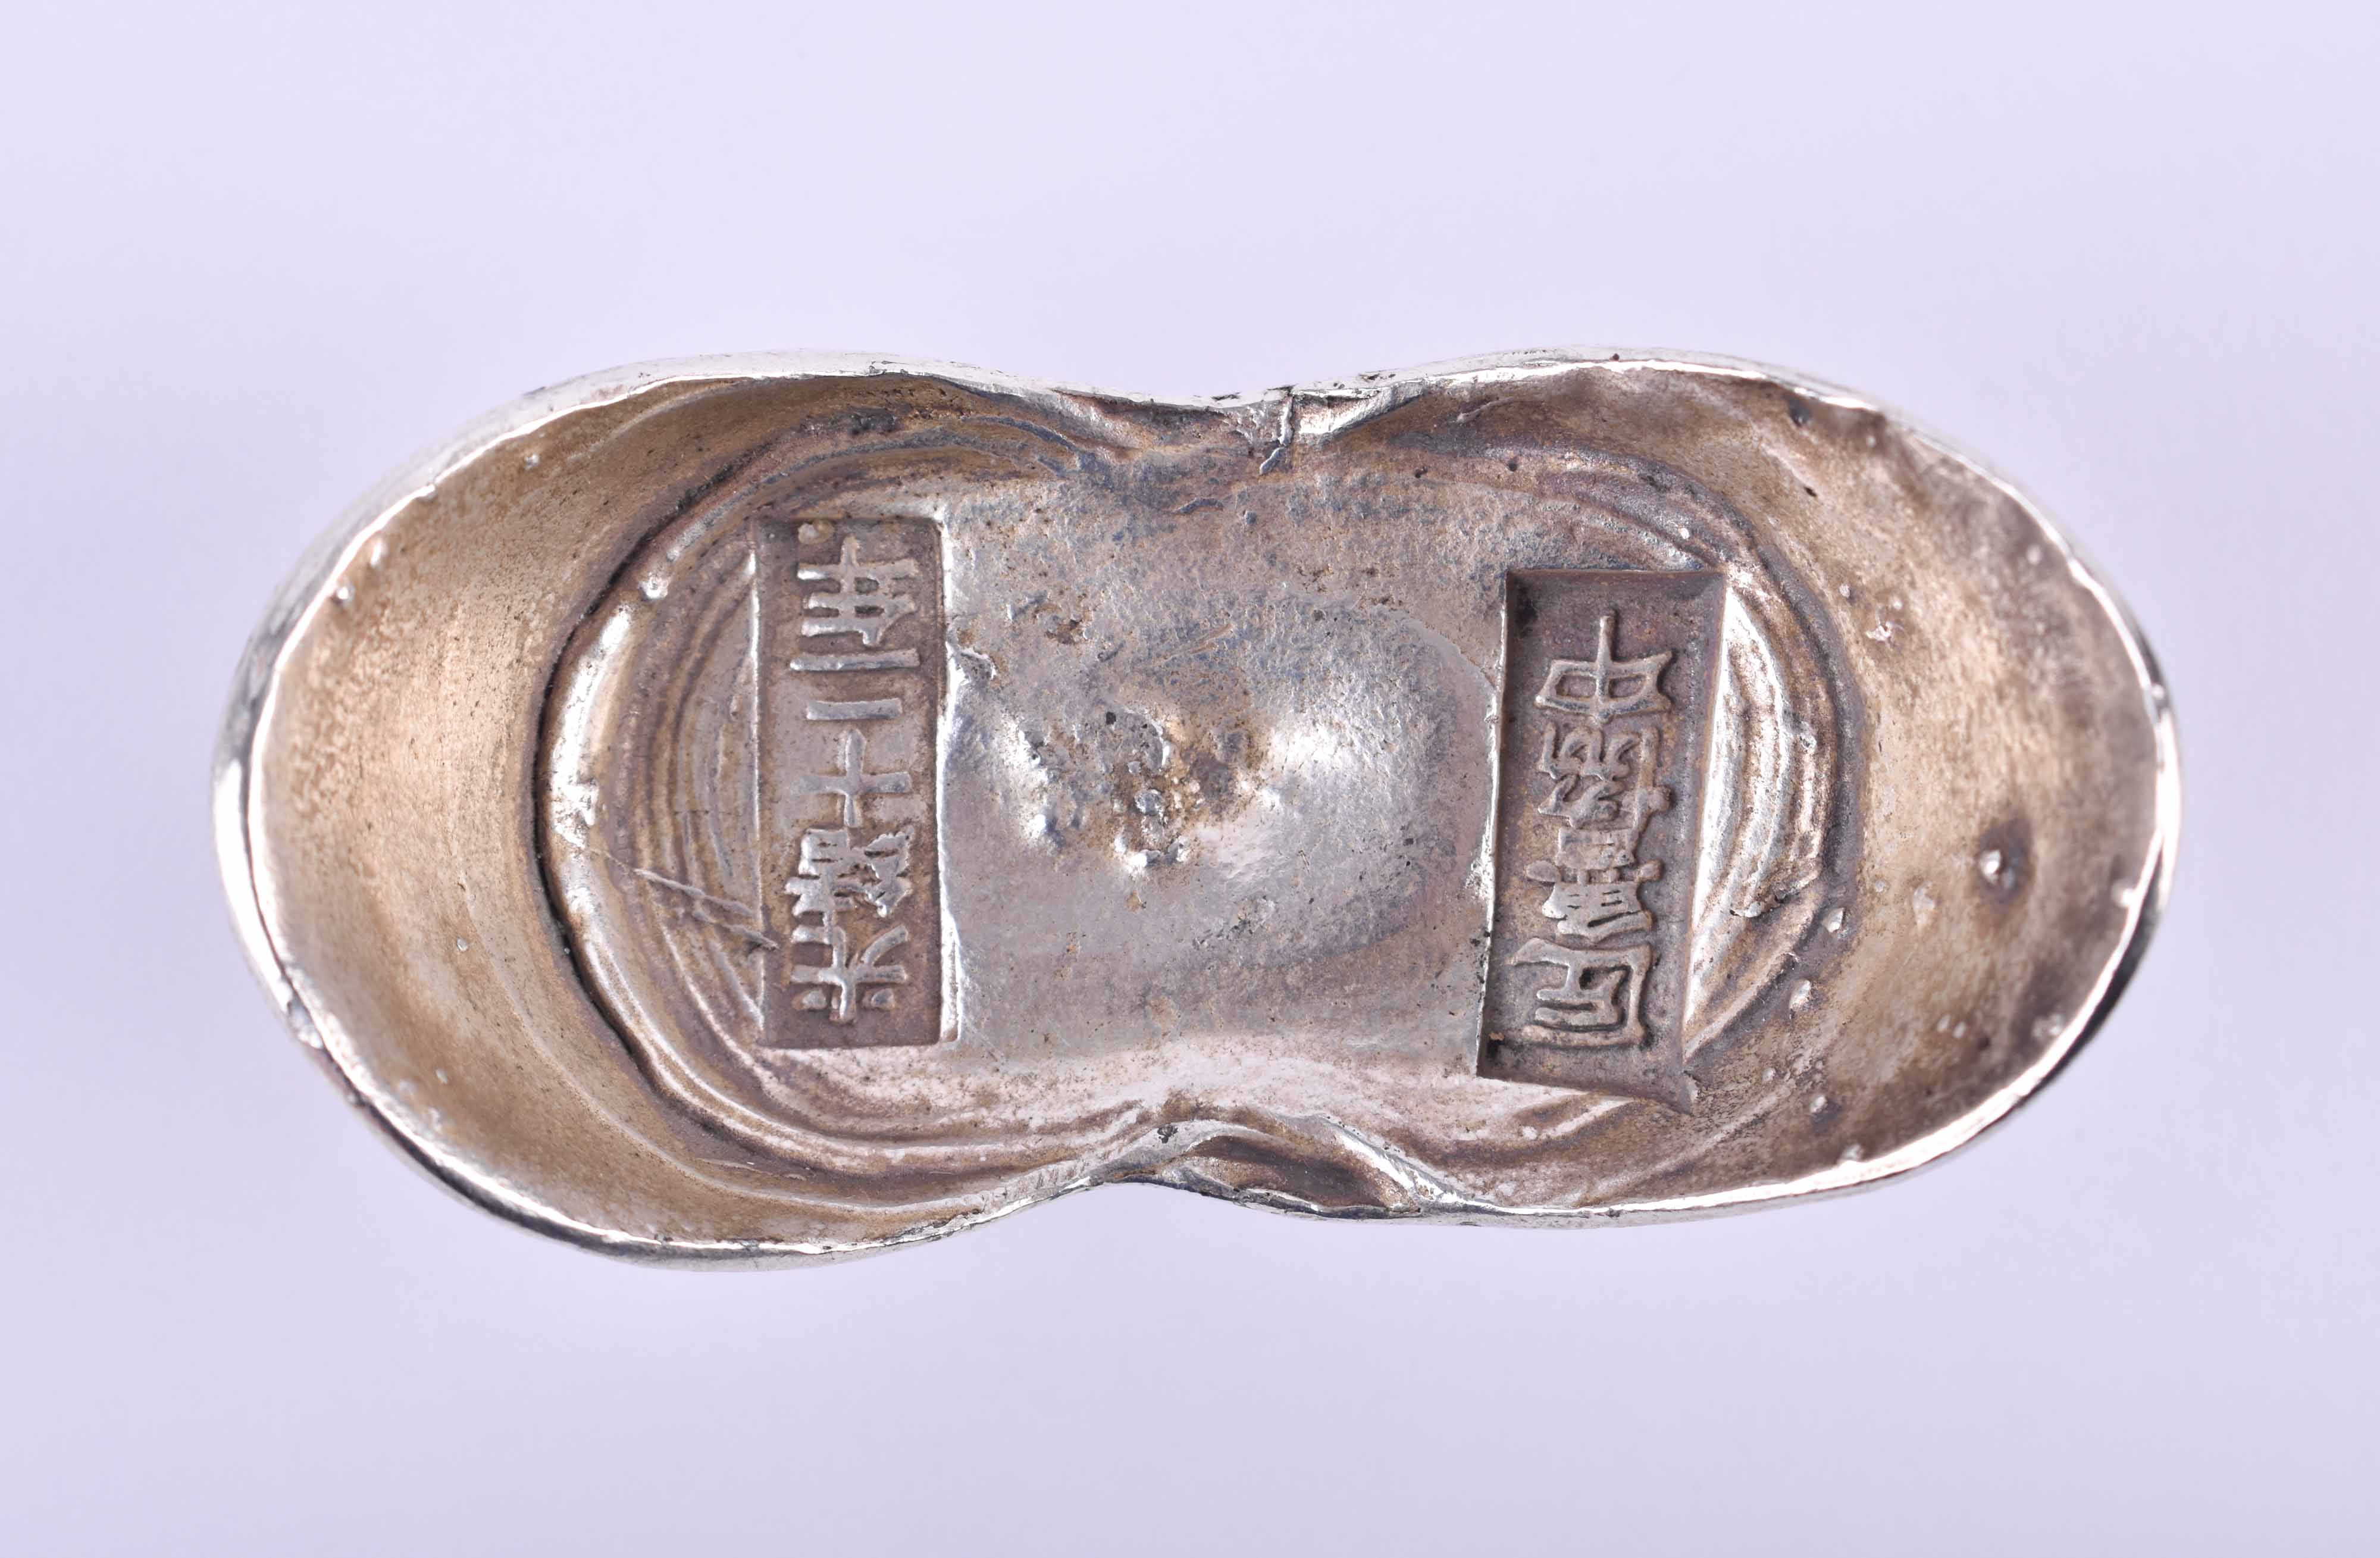  Silver bar China Sycee Qing dynasty - Image 8 of 10